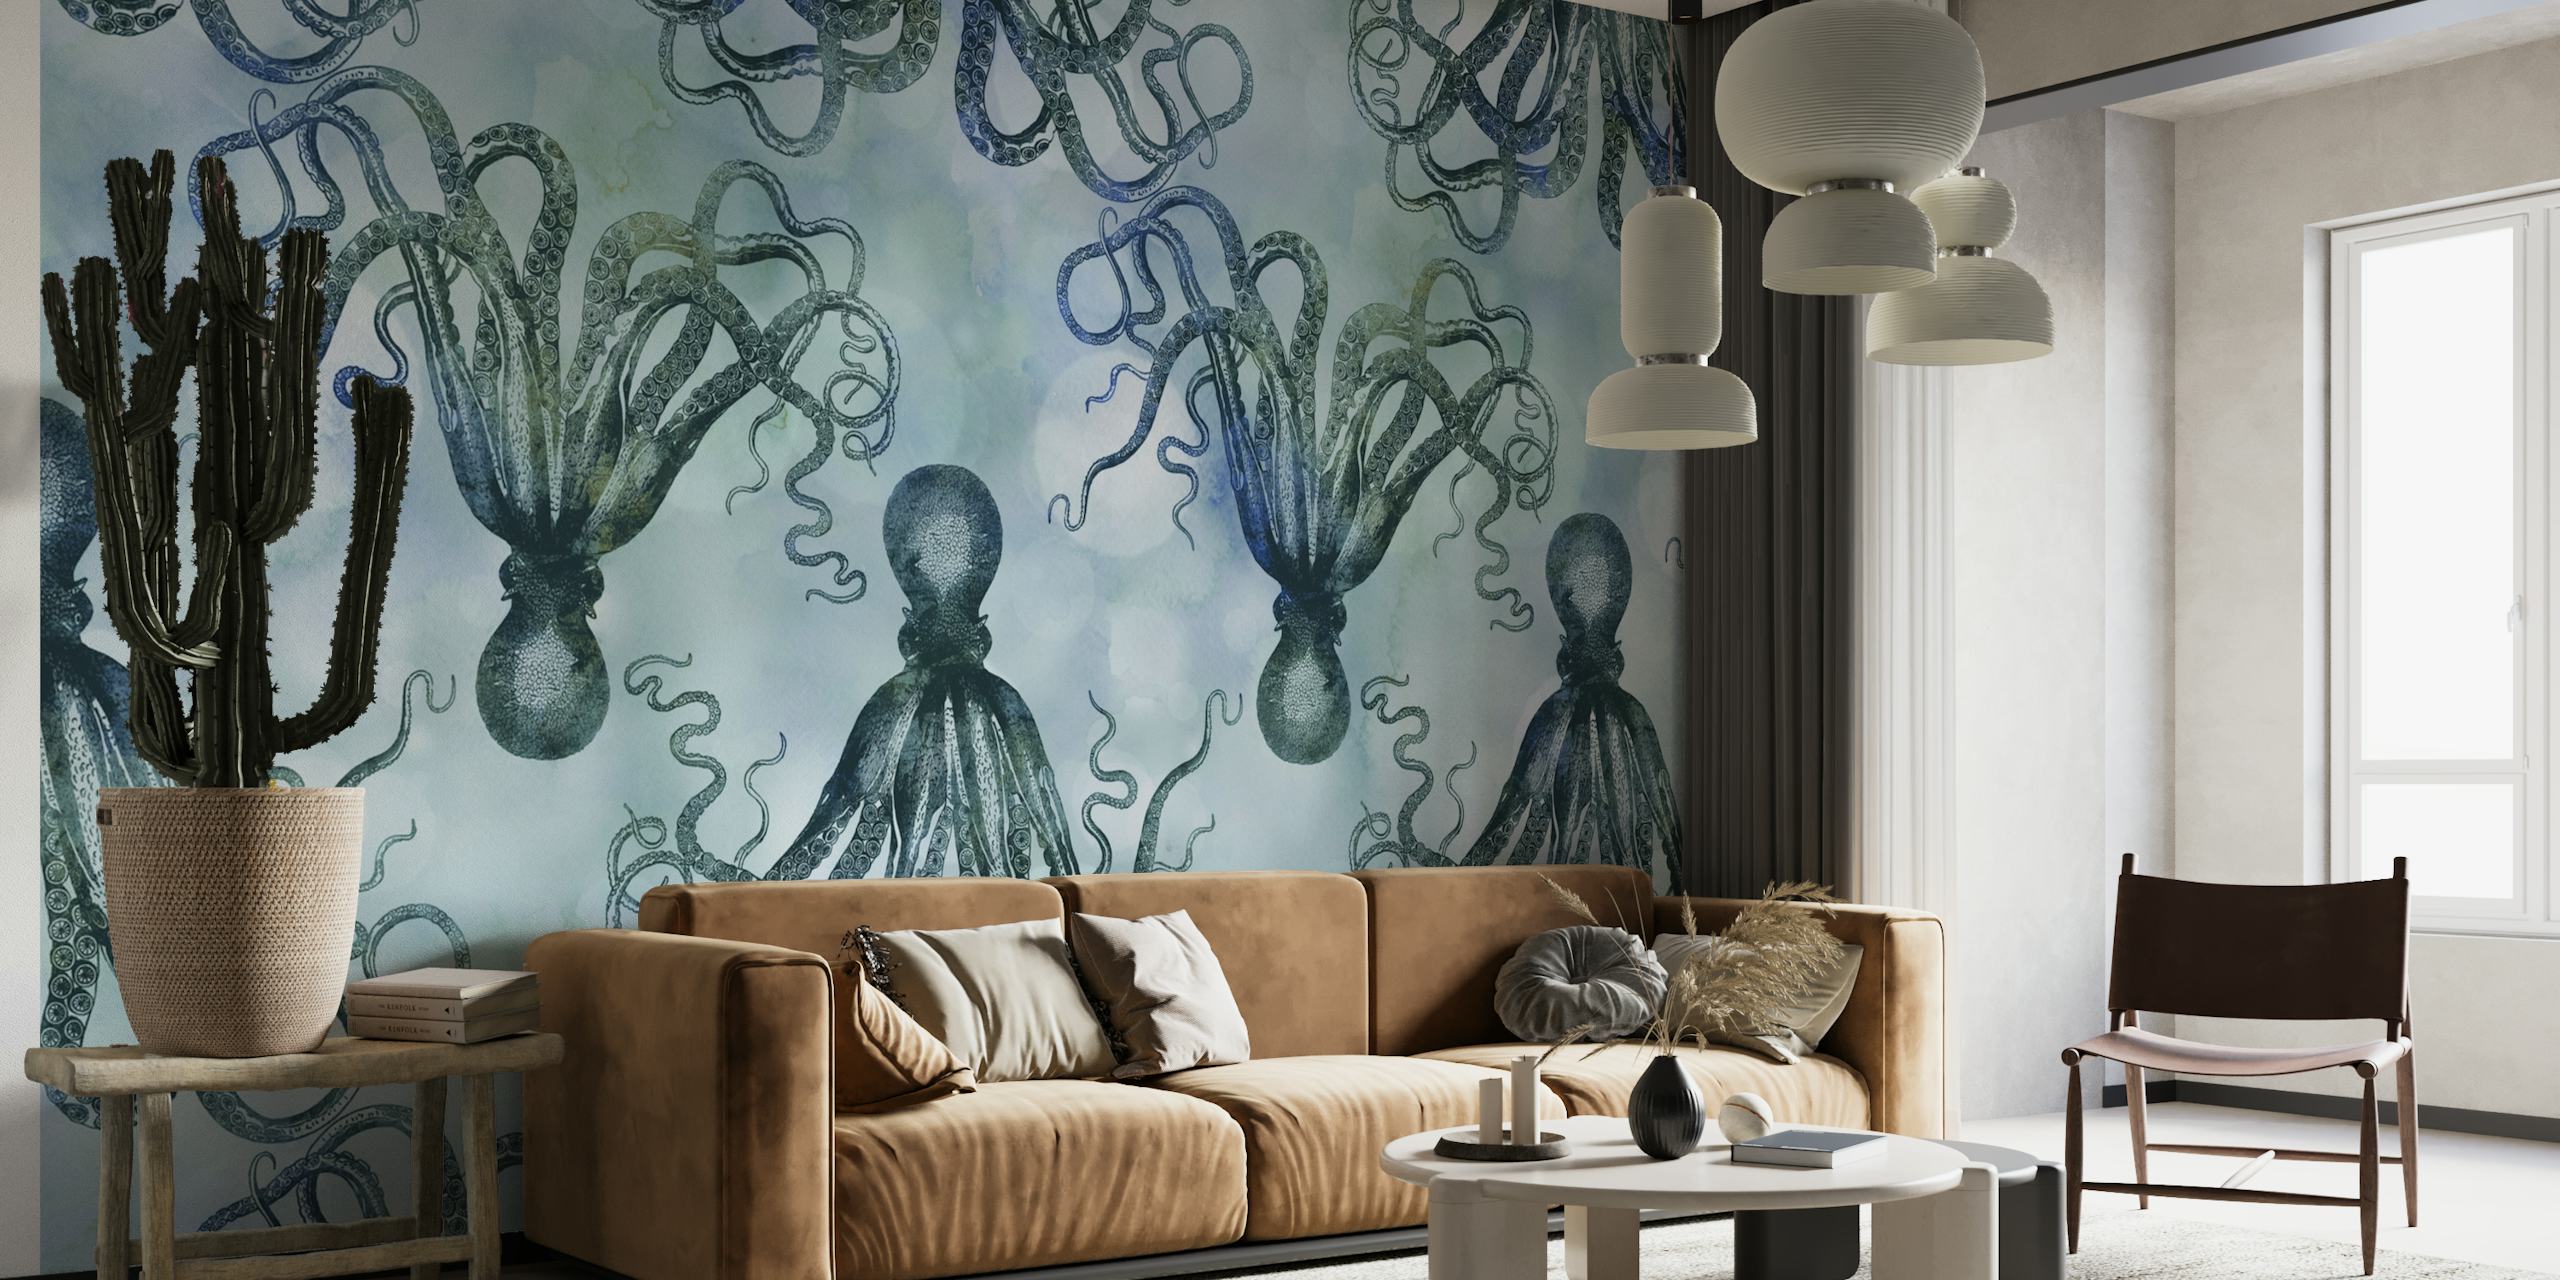 Yndefulde blæksprutter i blå nuancer, der driver roligt på et vægmaleri